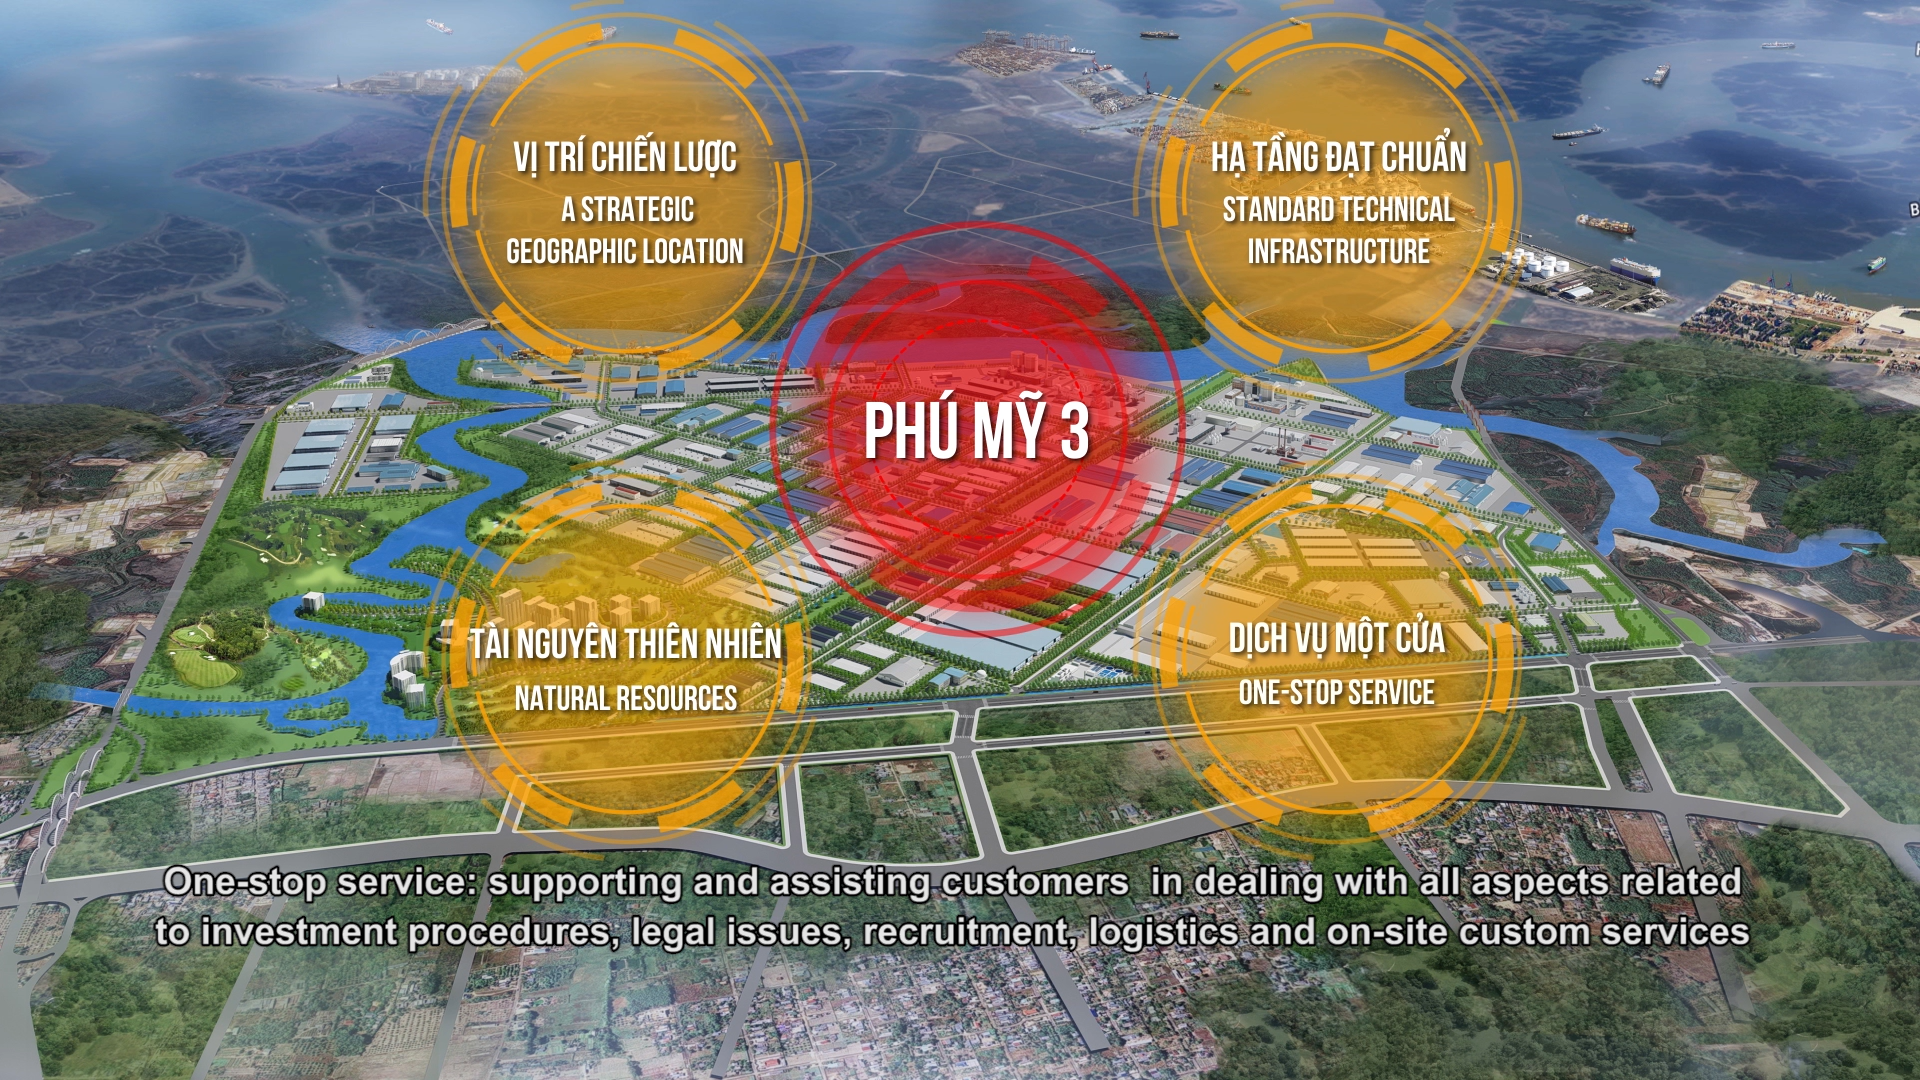 푸미3전문산업단지의 5년 간 탄생 및 발전 과정에 대한 홍보 동영상